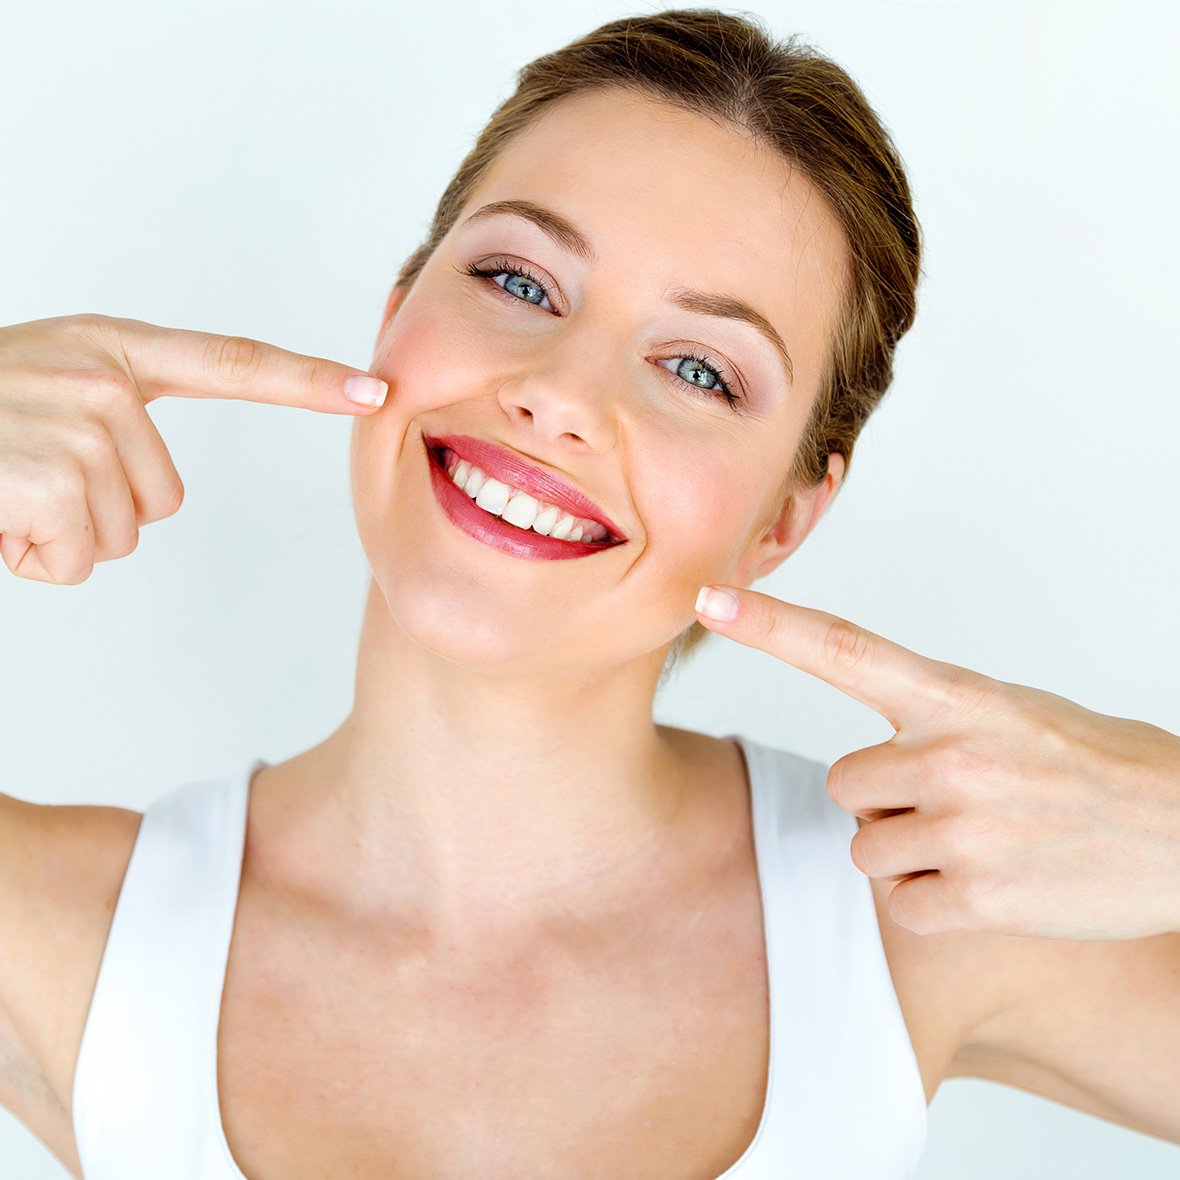 Egy fiatal lány mutat a tökéletesen fehér fogsorára a fogkőleszedés után.